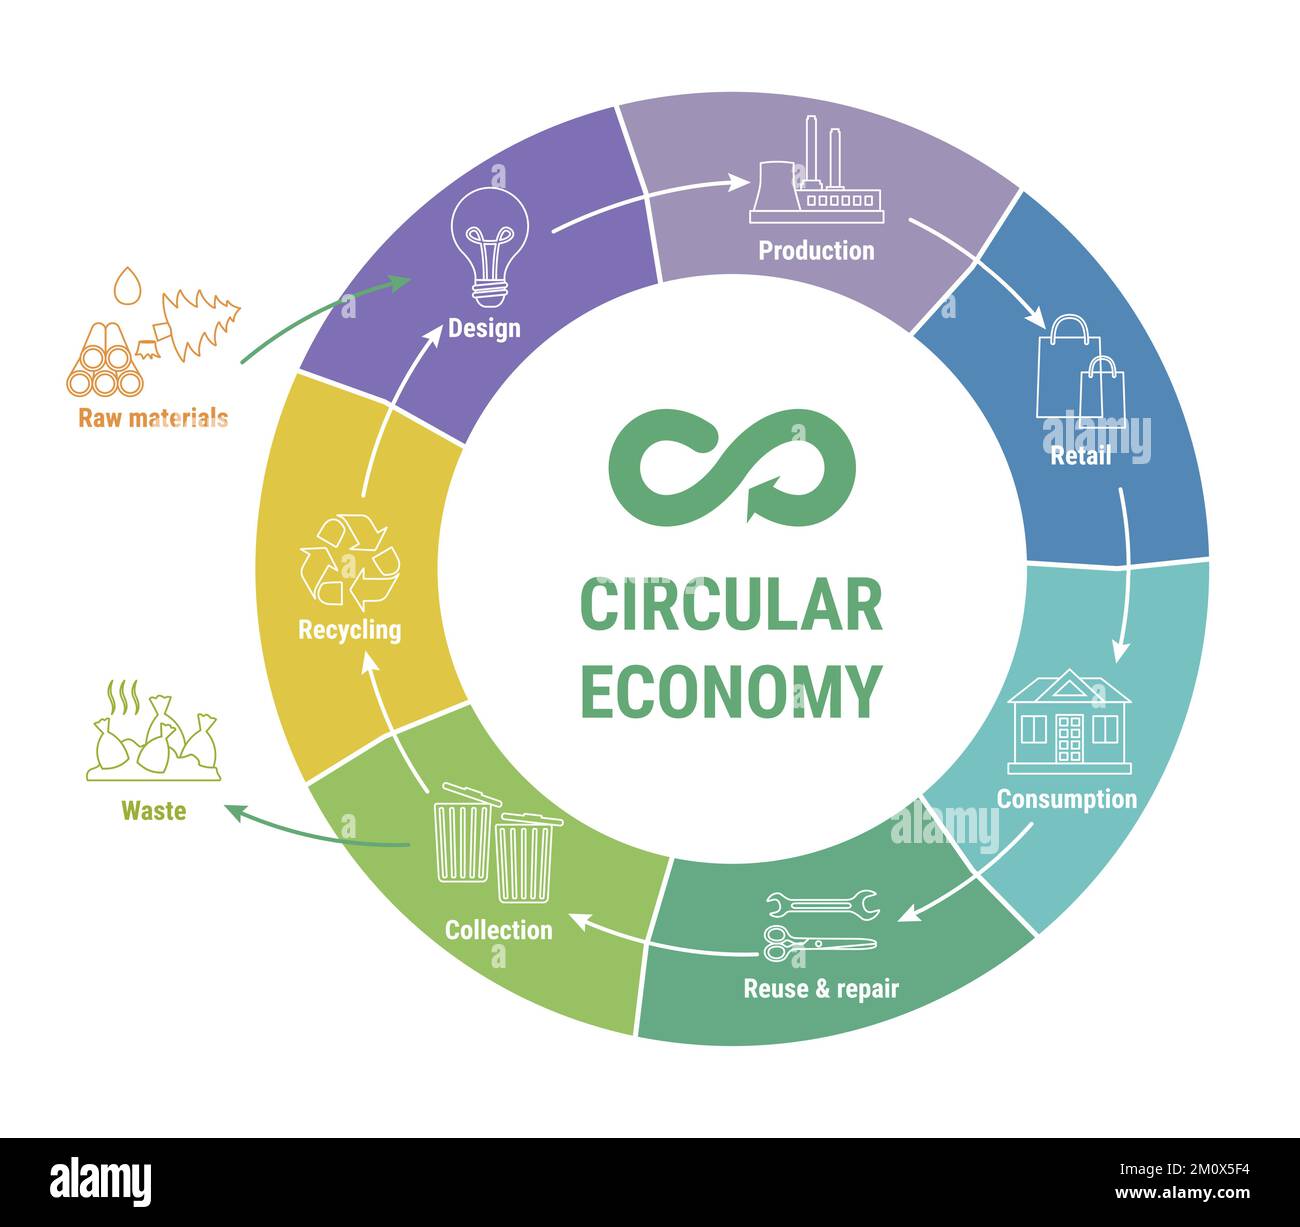 Infographie circulaire de la gamme économique sur le schéma coloré. Modèle commercial durable. Schéma du cycle de vie du produit de la matière première à la production, consu Illustration de Vecteur